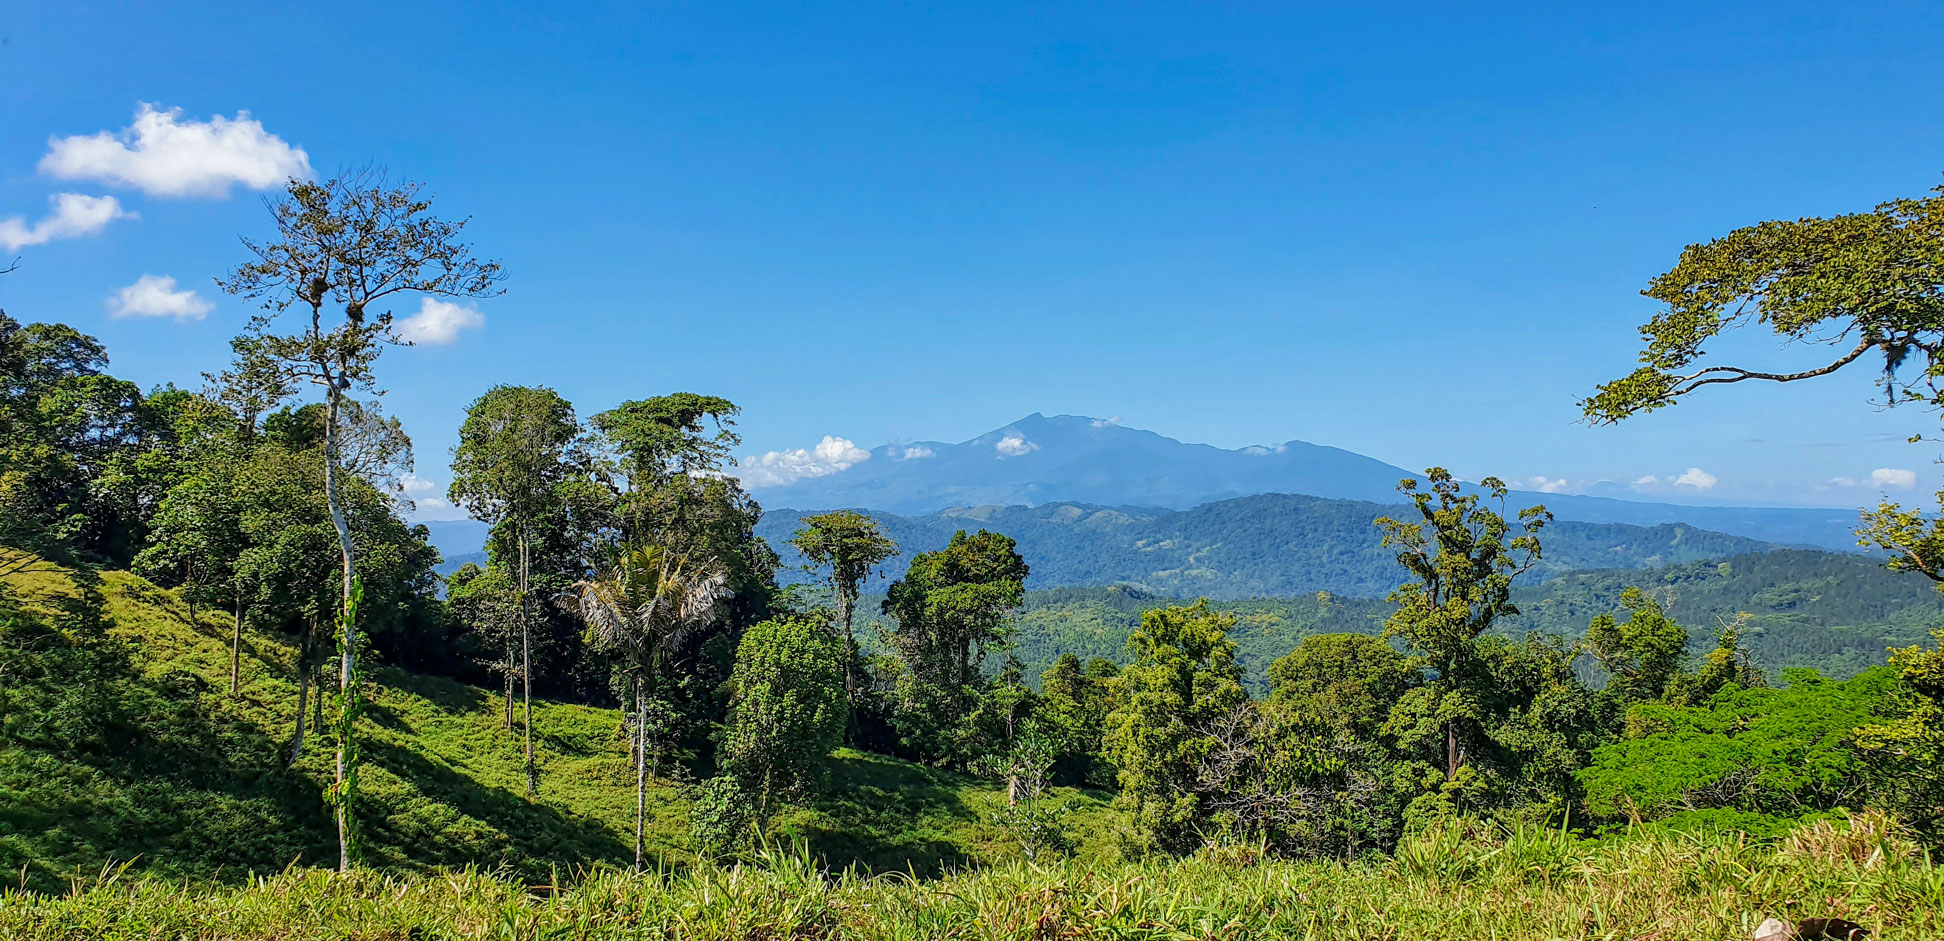 Turrialba stratovolcano seen from the Camino de Costa Rica, a trail in Costa Rica